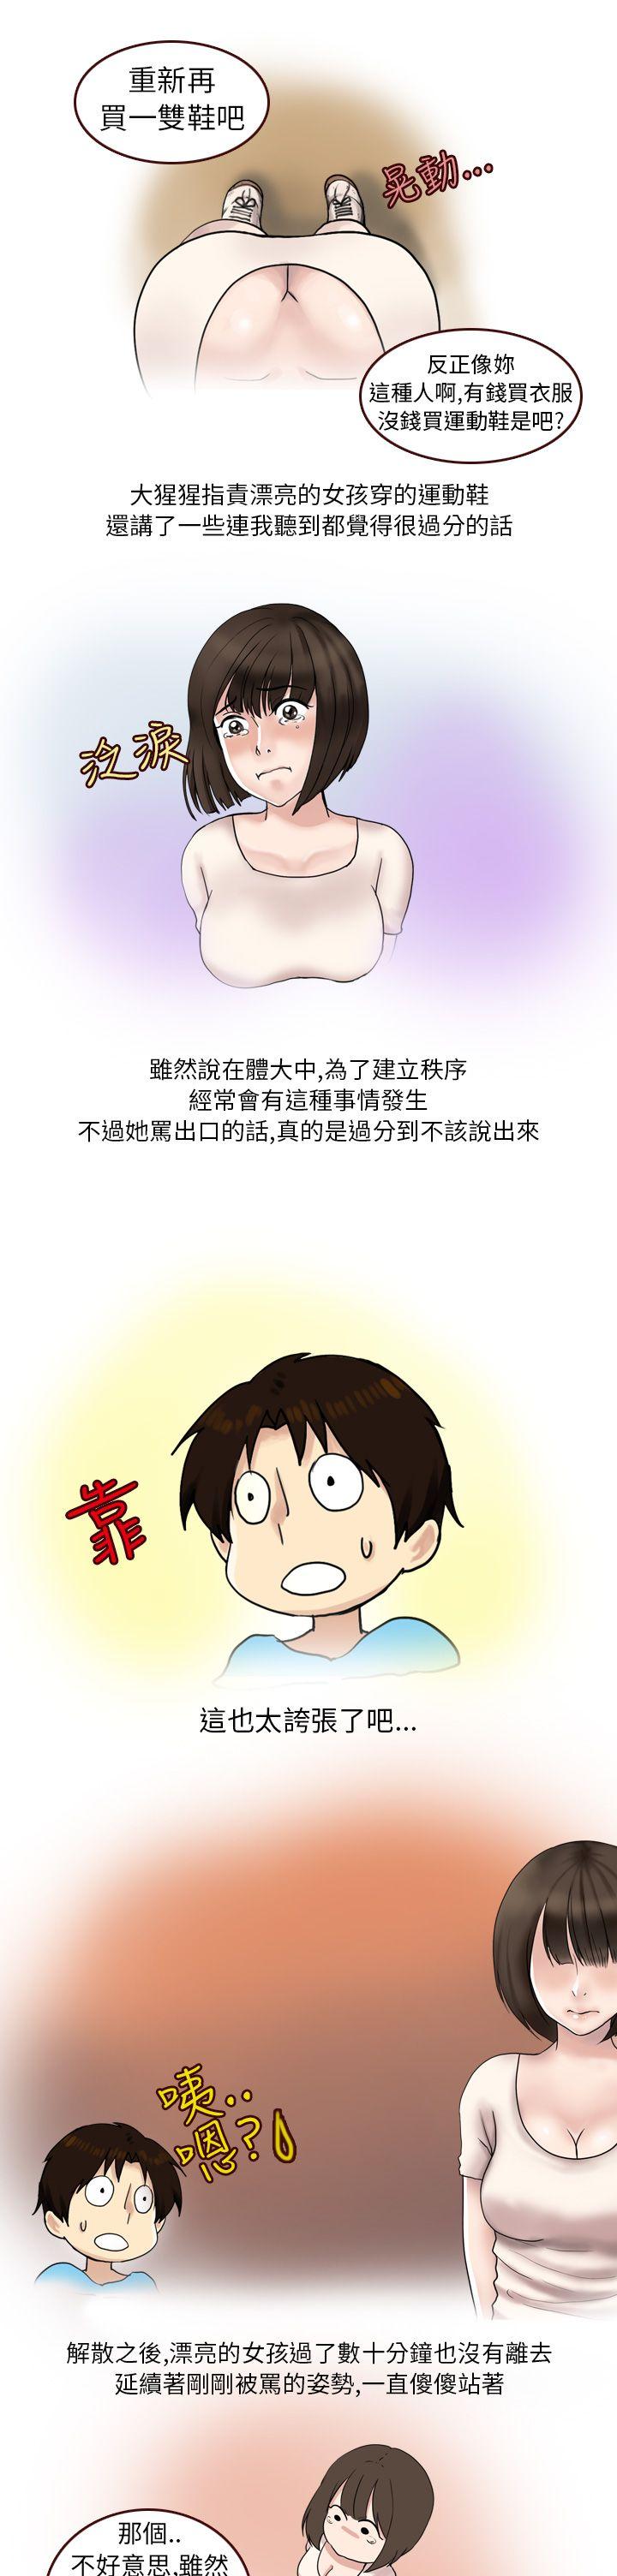 秘密Story第二季  与体大女生的恋爱(上) 漫画图片3.jpg